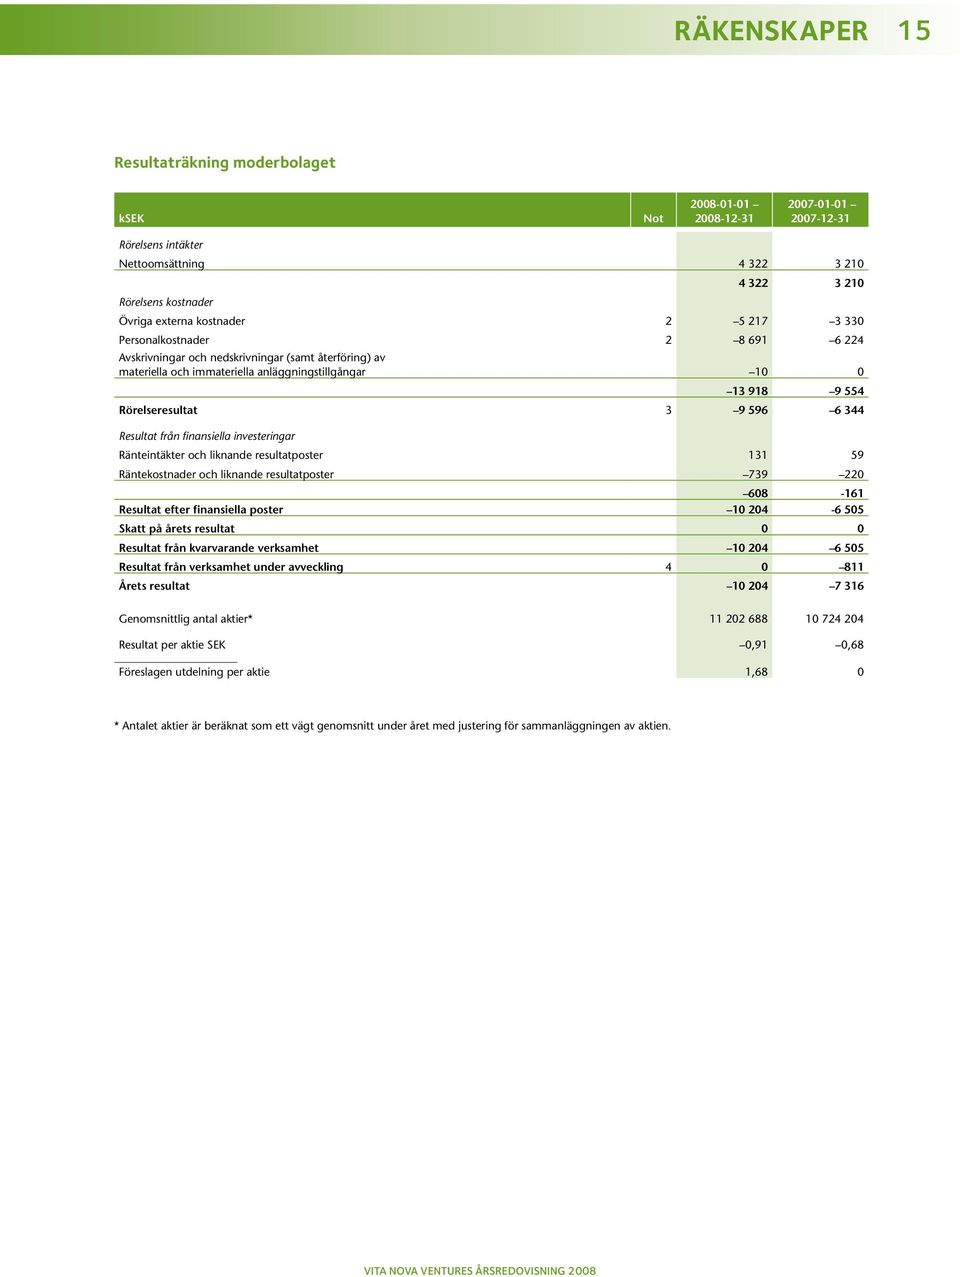 596 6 344 Resultat från finansiella investeringar Ränteintäkter och liknande resultatposter 131 59 Räntekostnader och liknande resultatposter 739 220 608-161 Resultat efter finansiella poster 10